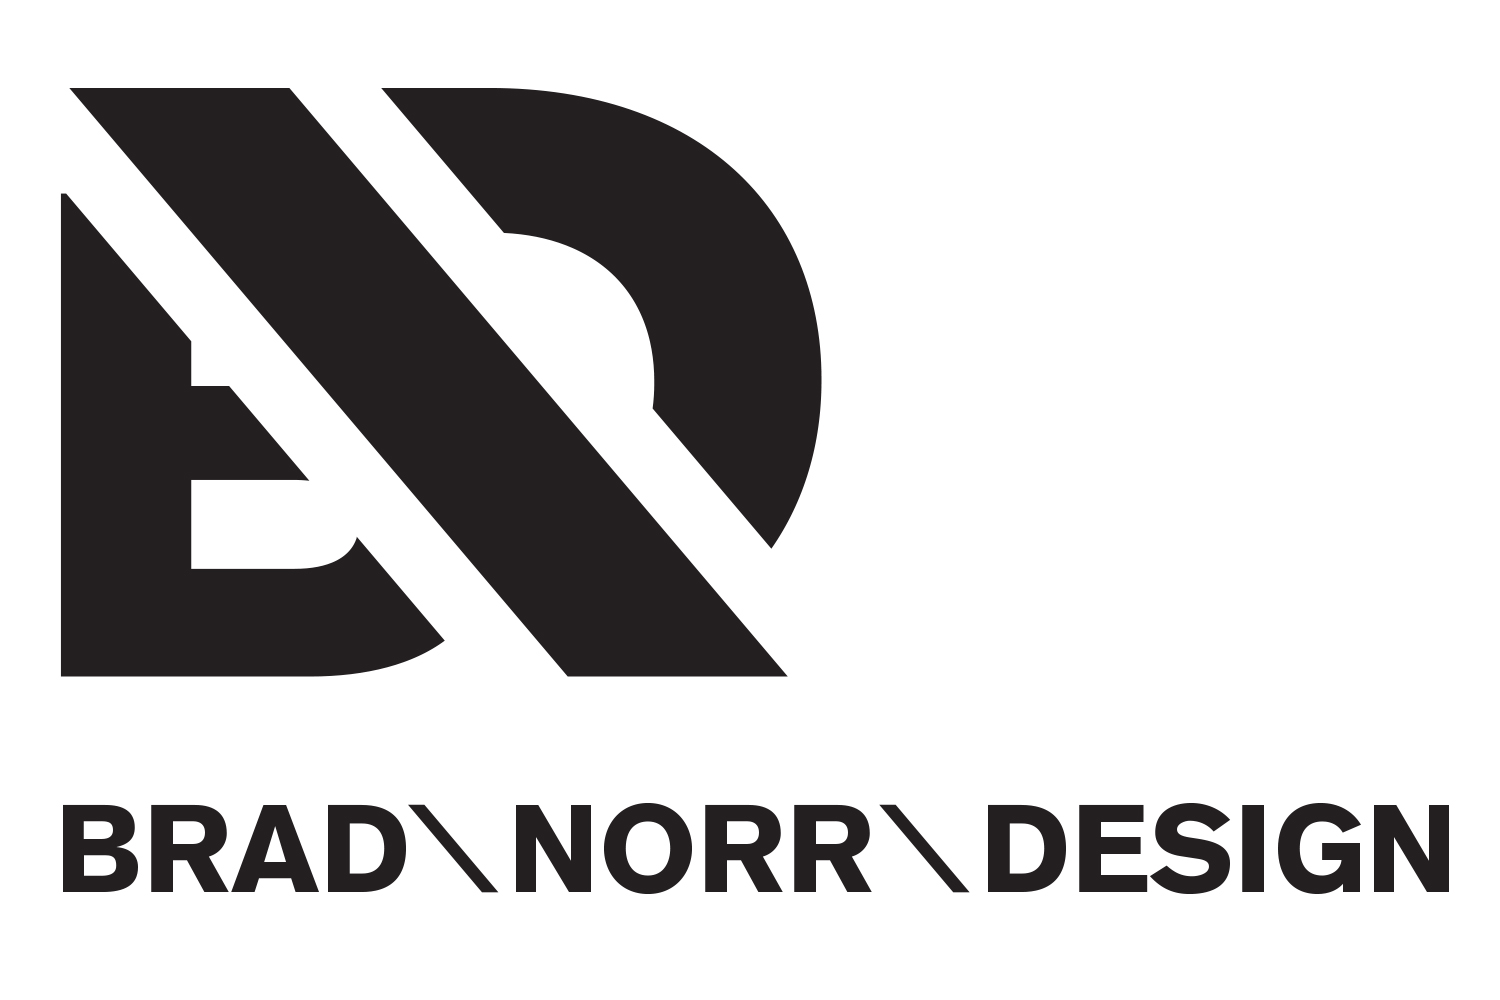 Brad Norr Design